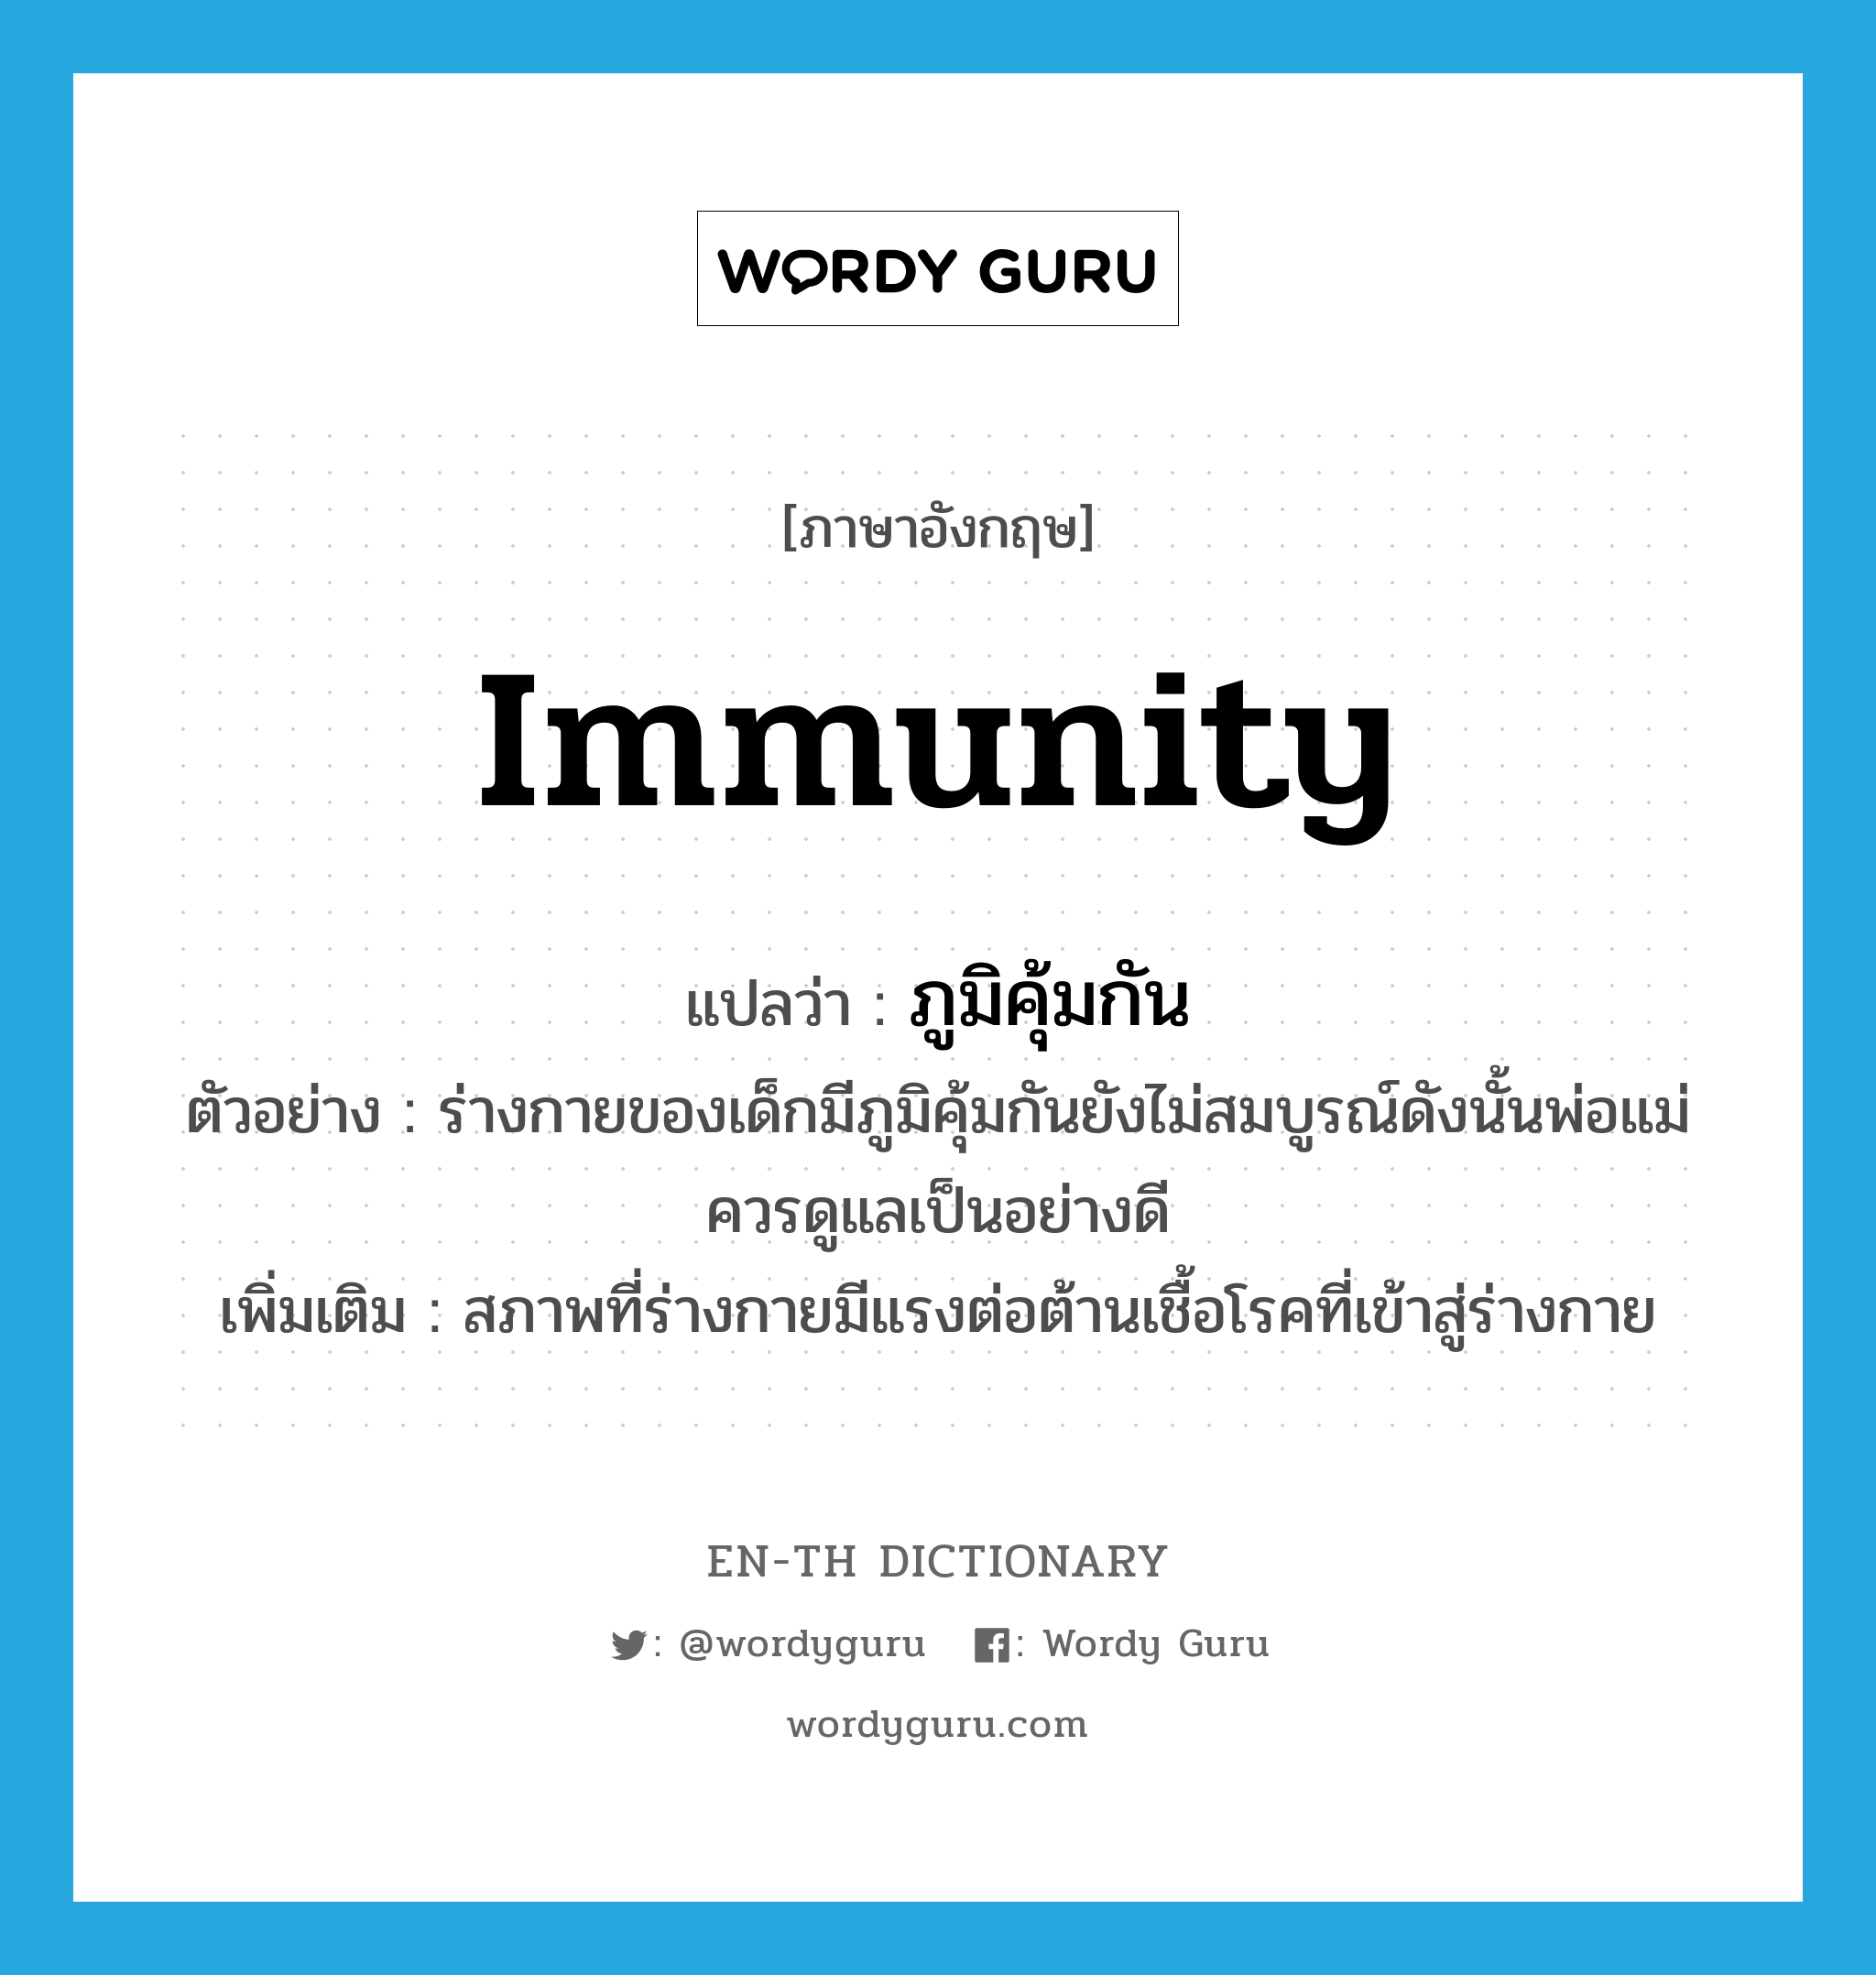 immunity แปลว่า?, คำศัพท์ภาษาอังกฤษ immunity แปลว่า ภูมิคุ้มกัน ประเภท N ตัวอย่าง ร่างกายของเด็กมีภูมิคุ้มกันยังไม่สมบูรณ์ดังนั้นพ่อแม่ควรดูแลเป็นอย่างดี เพิ่มเติม สภาพที่ร่างกายมีแรงต่อต้านเชื้อโรคที่เข้าสู่ร่างกาย หมวด N